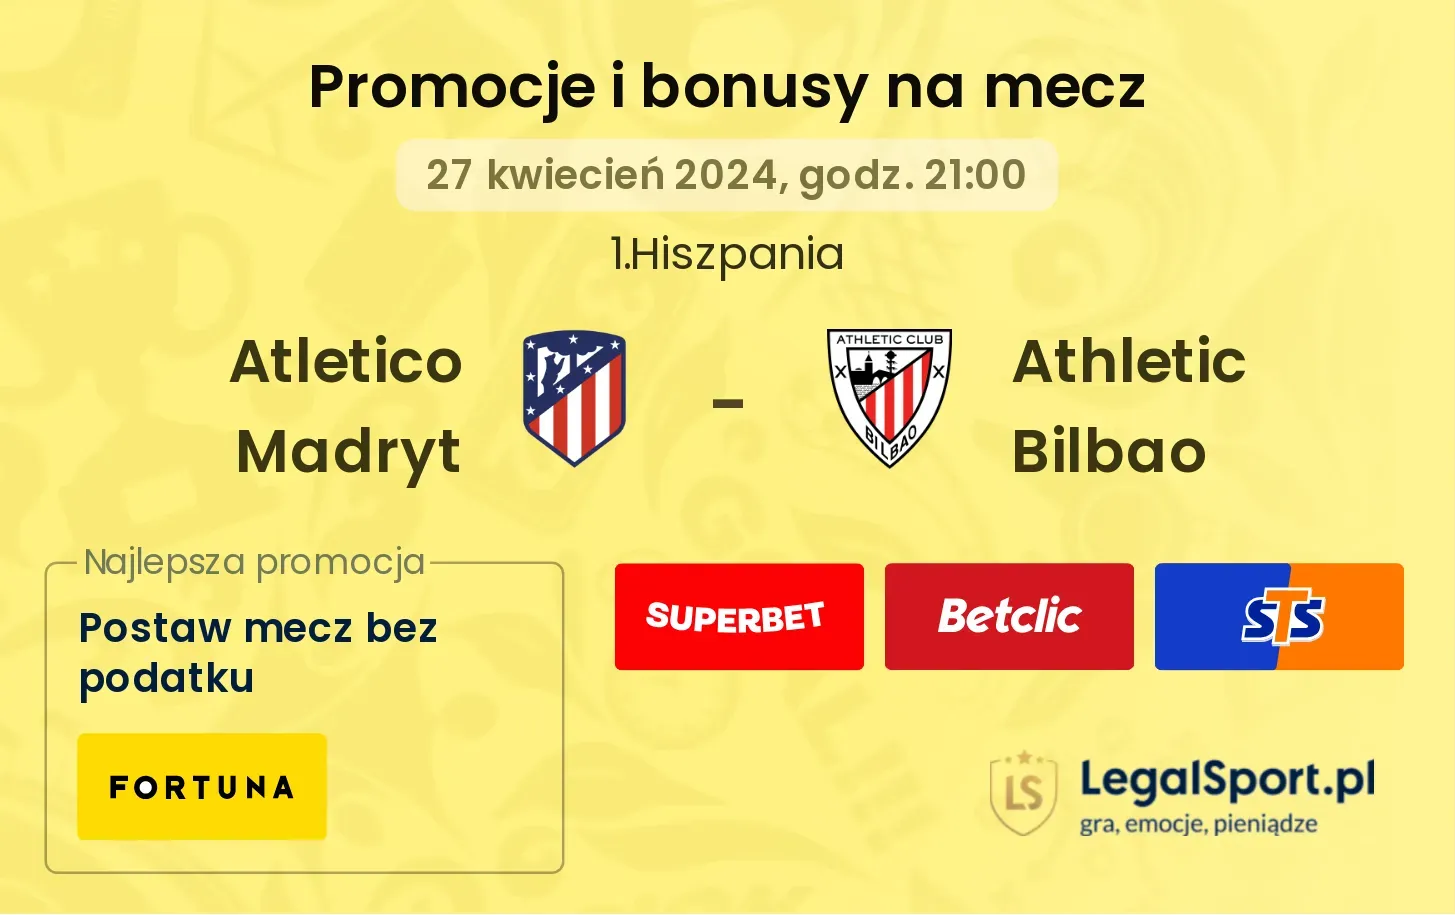 Atletico Madryt - Athletic Bilbao promocje bonusy na mecz